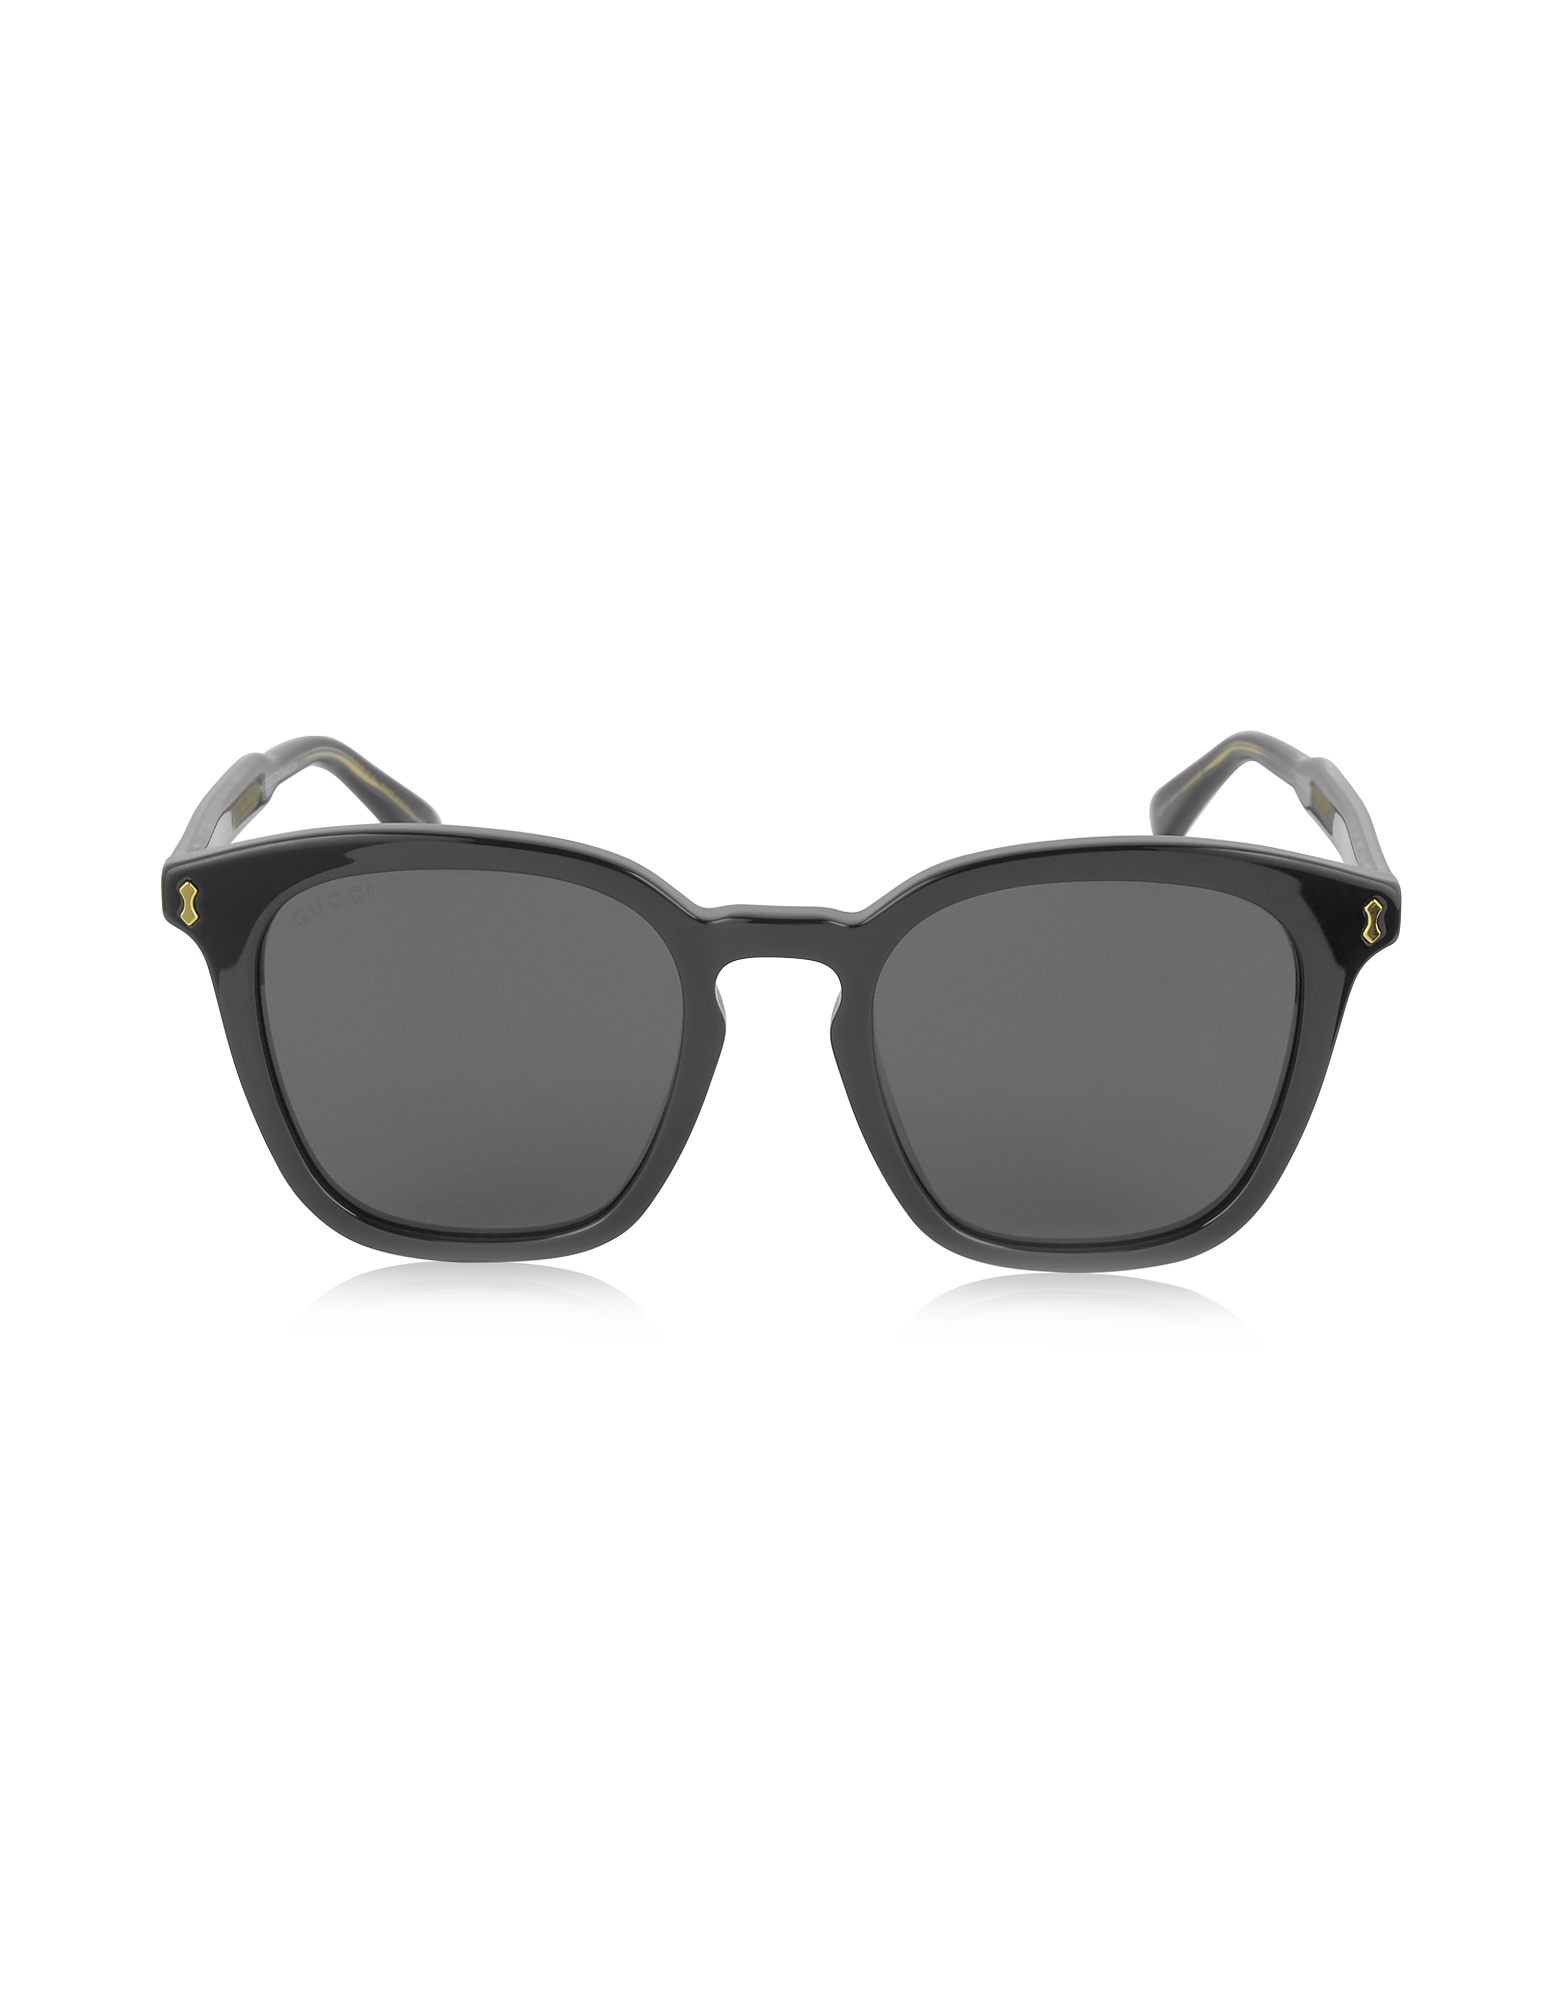 Gucci GG0125S Acetate Square Men's Sunglasses